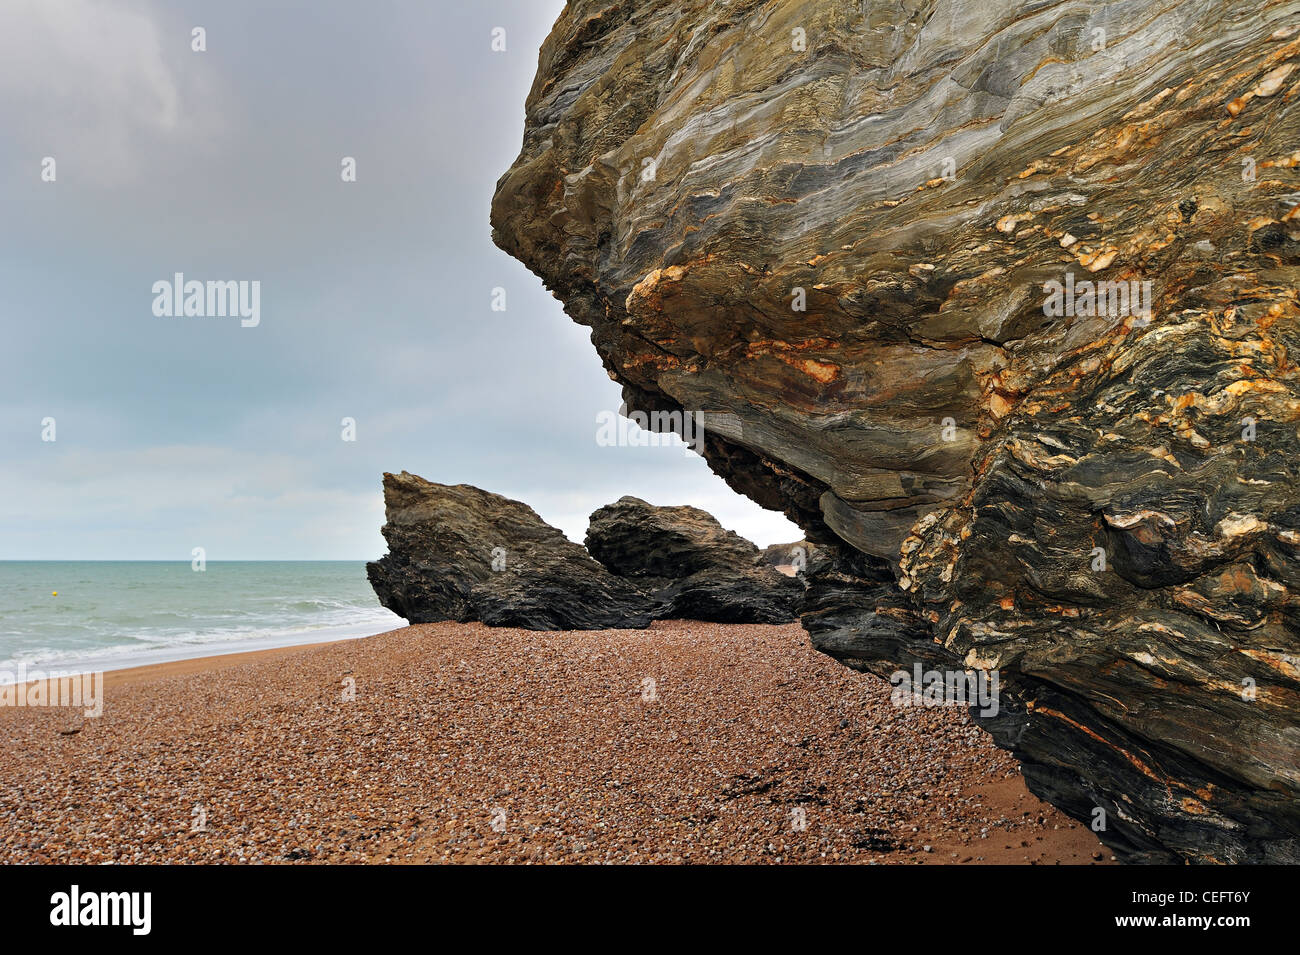 Pebble beach and eroded rocks at Saint-Hilaire-de-Riez, La Vendée, Pays de la Loire, France Stock Photo